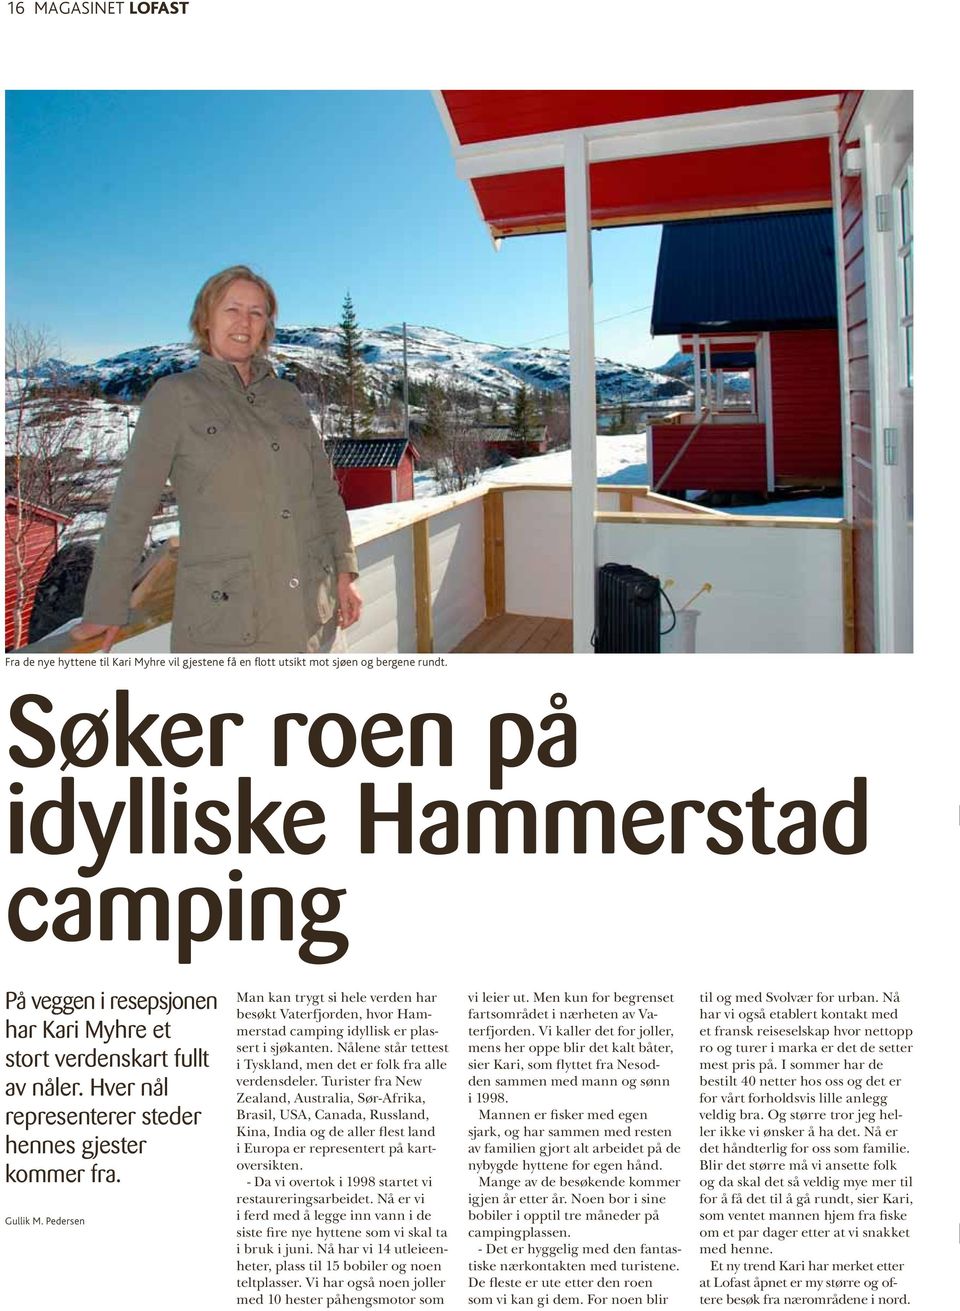 Pedersen Man kan trygt si hele verden har besøkt Vaterfjorden, hvor Hammerstad camping idyllisk er plassert i sjøkanten. Nålene står tettest i Tyskland, men det er folk fra alle verdensdeler.